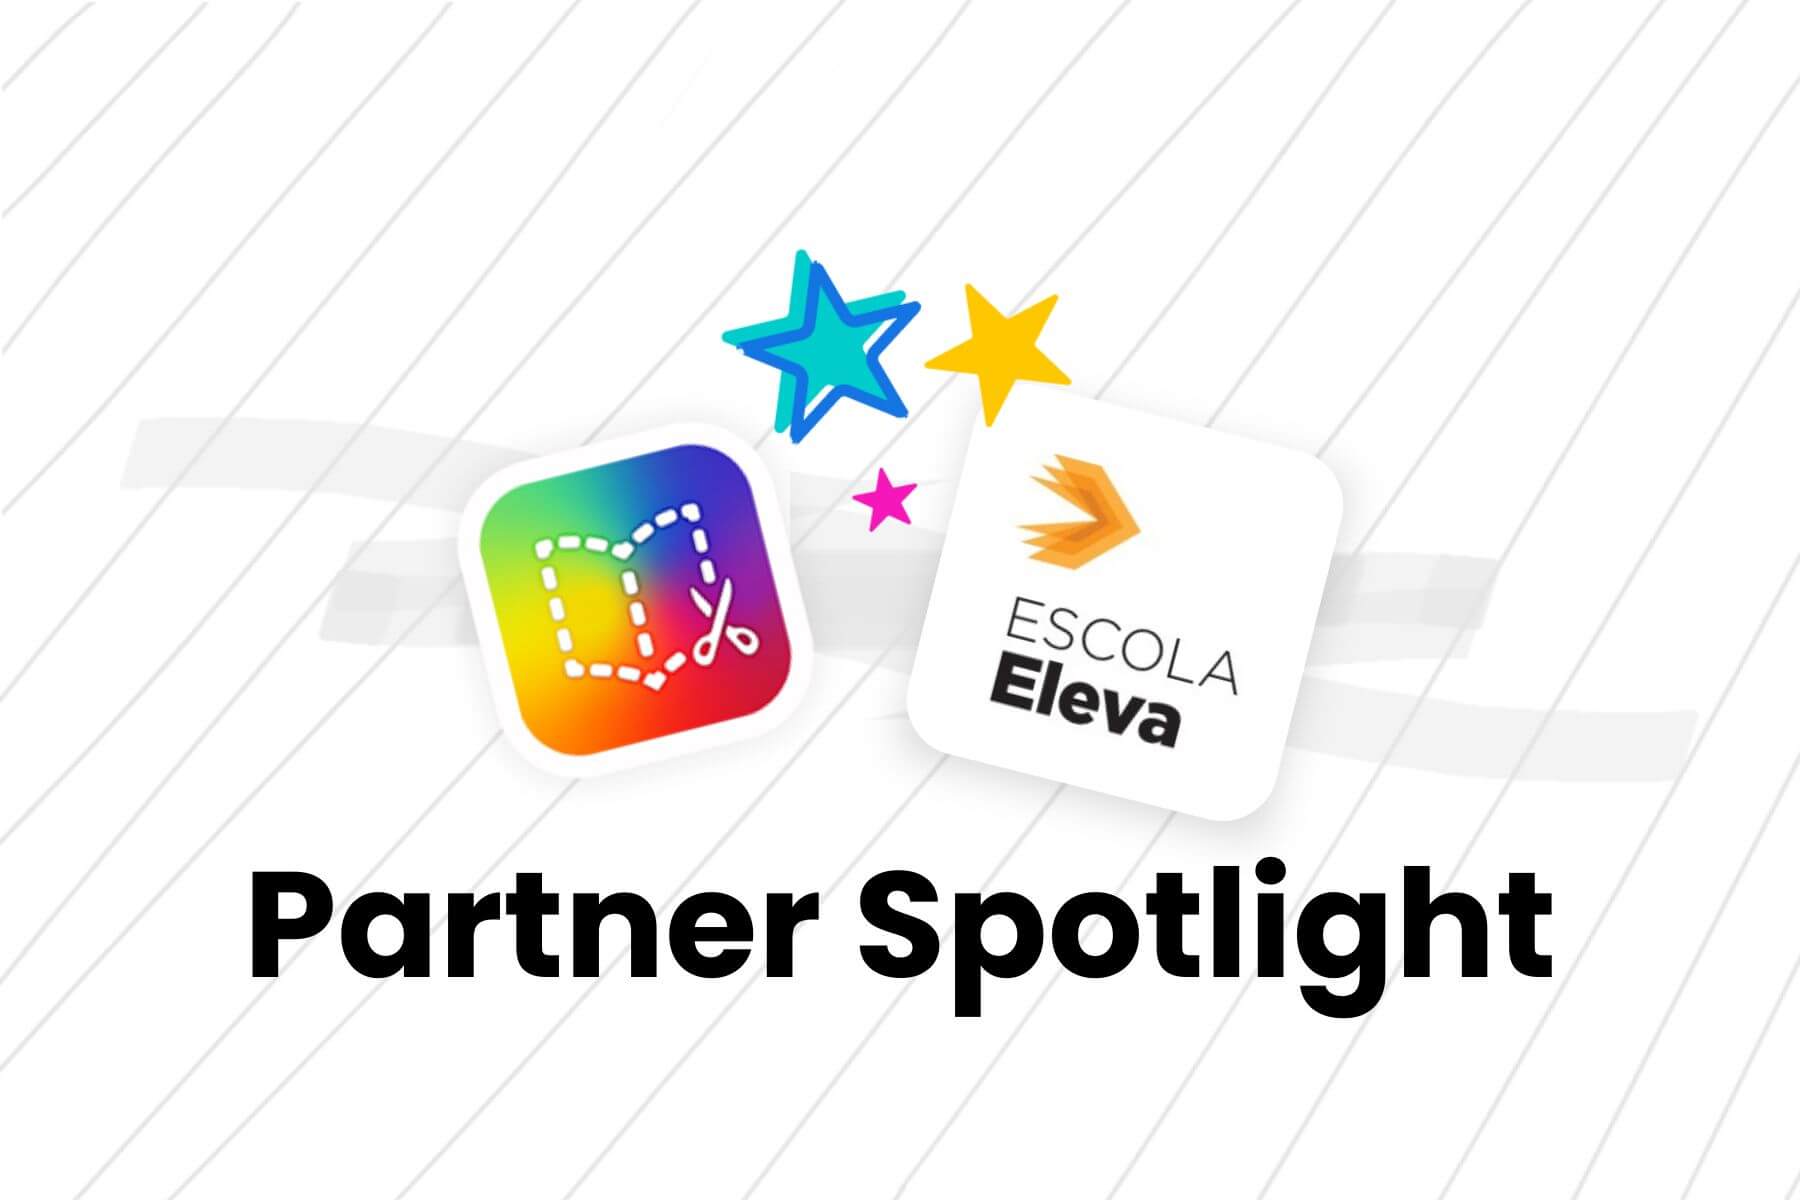 Featured Image for “Partner Spotlight – Escola Eleva São Paolo”